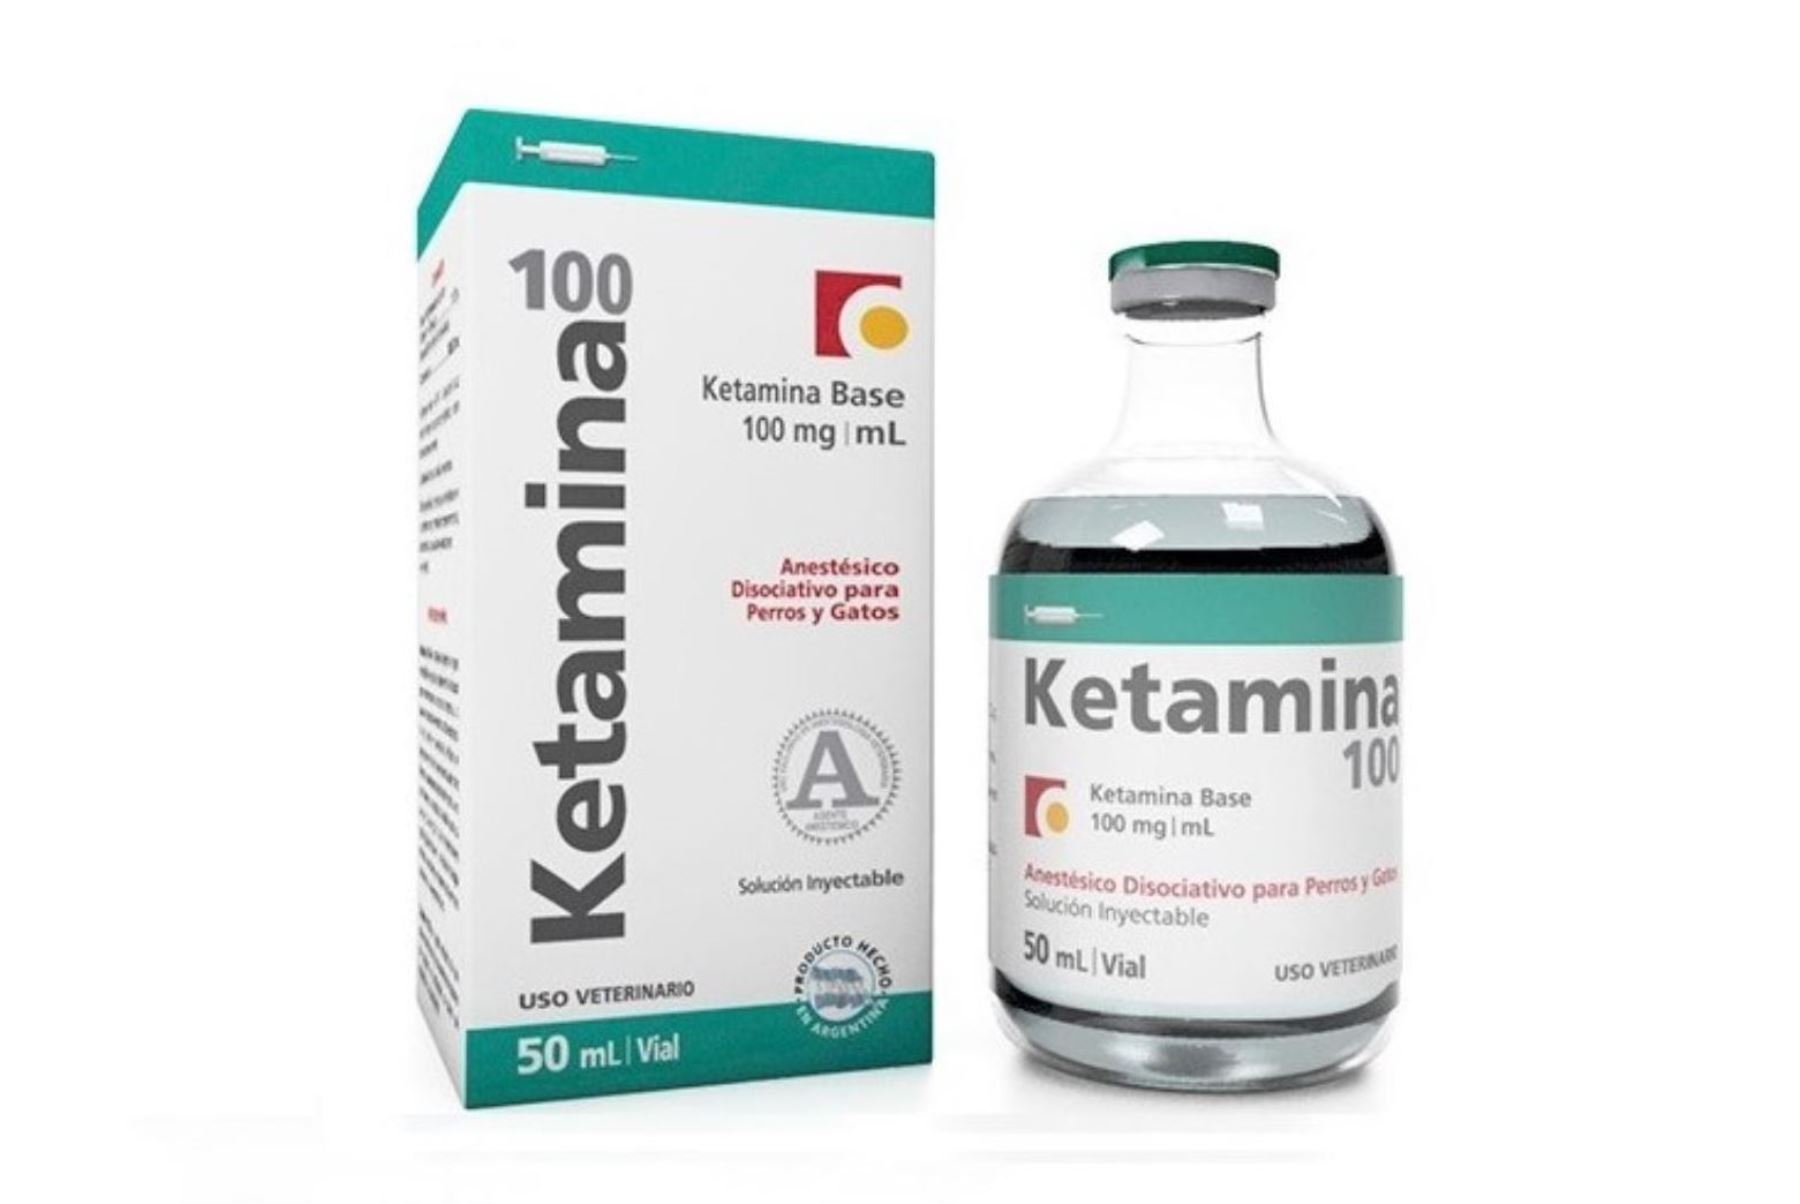 Cedro alerta sobre consumo de ketamina entre adolescentes en medio de la cuarentena